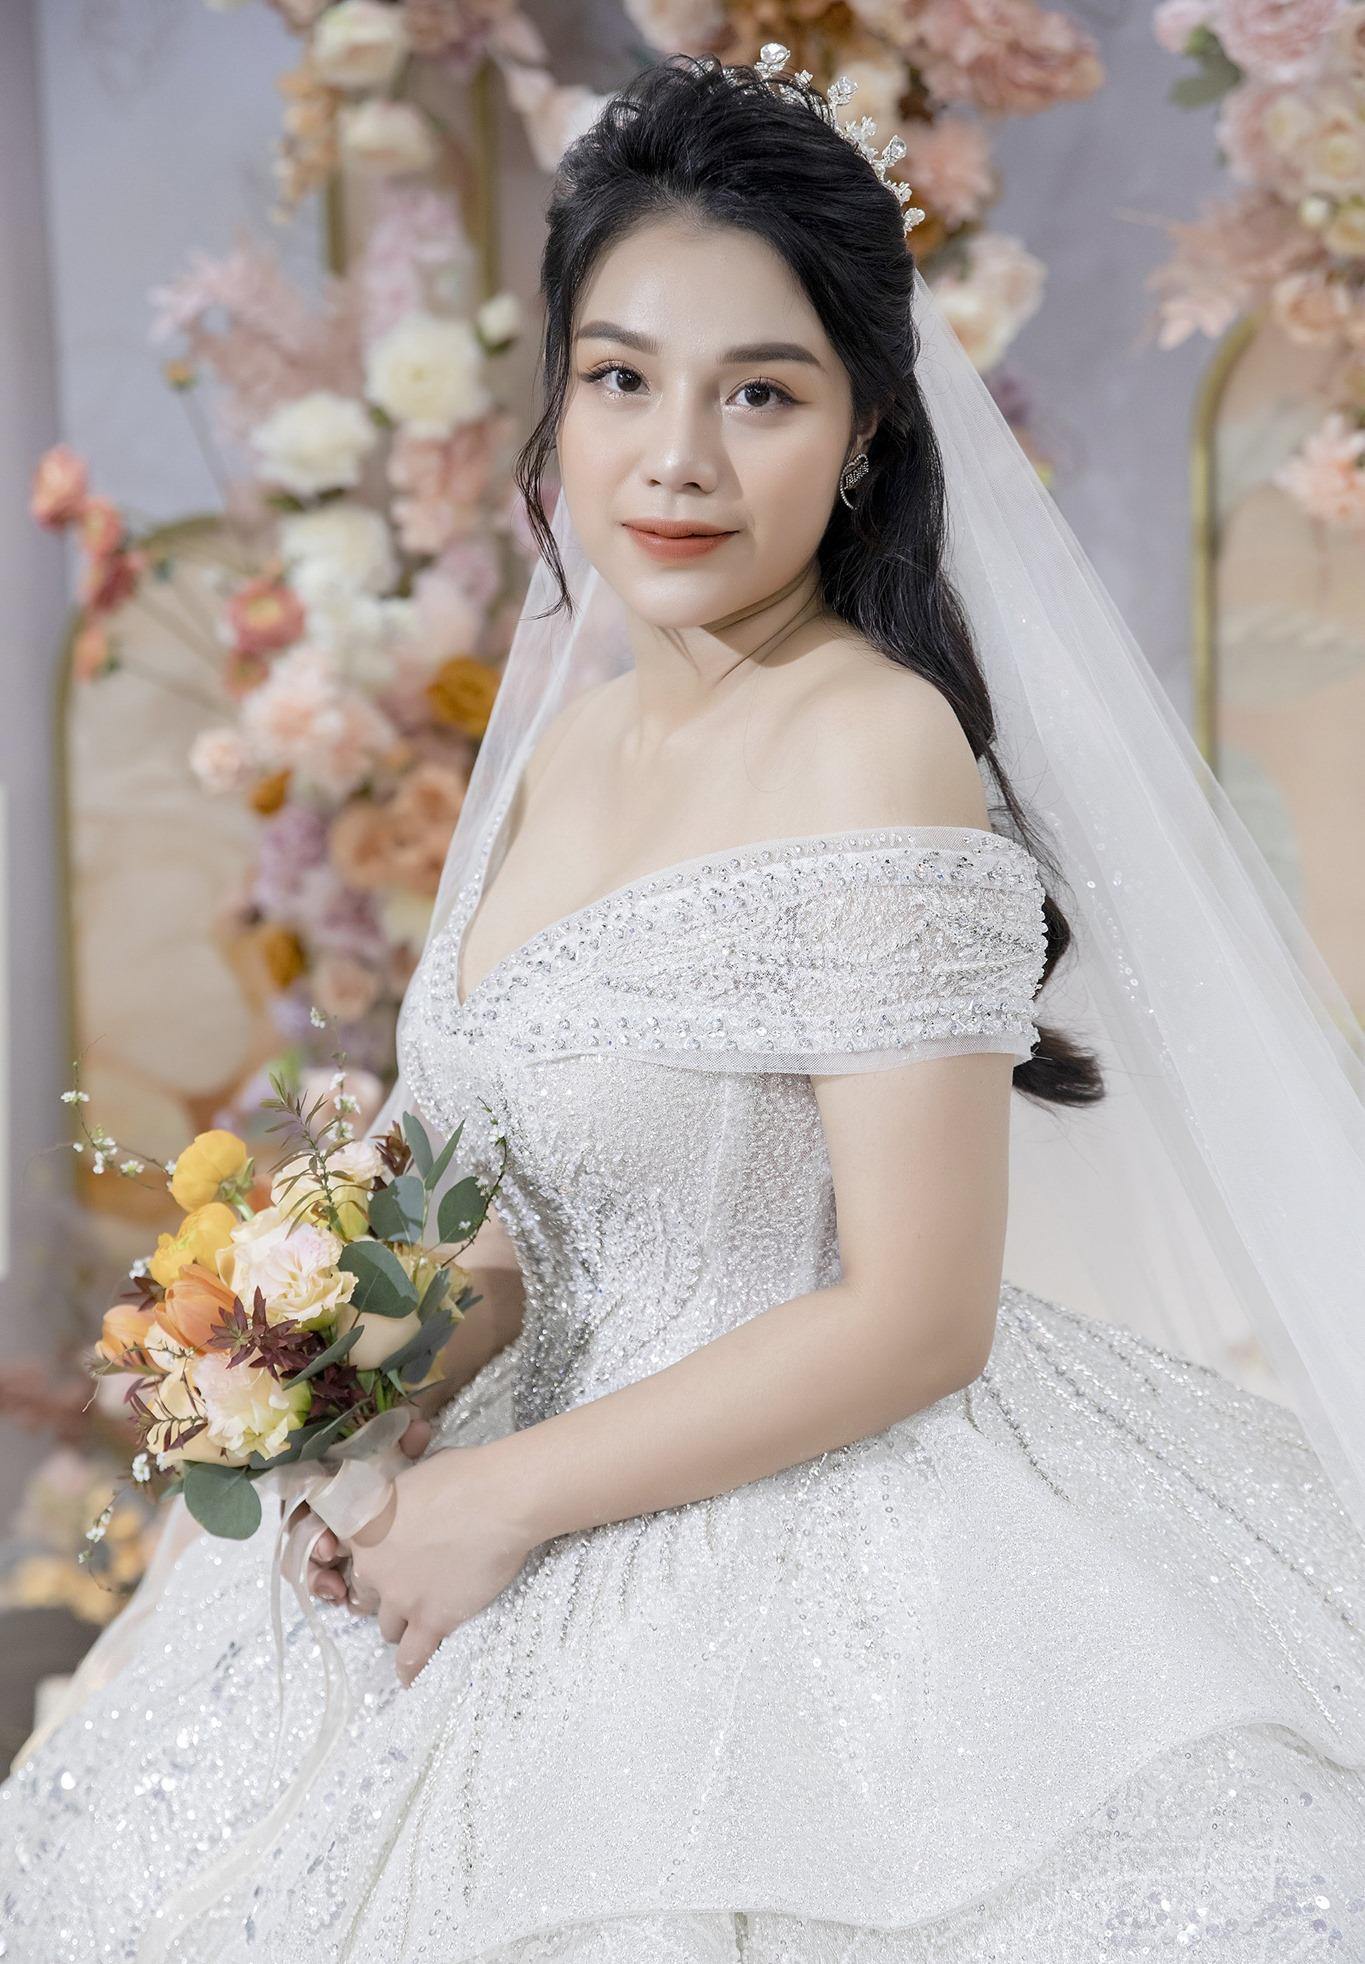 Sau khi đám cưới kết thúc, Khánh Linh và Bùi Tiến Dũng đã bán đấu giá một chiếc váy để quyên tiền cho làng trẻ em SOS Hà Tĩnh